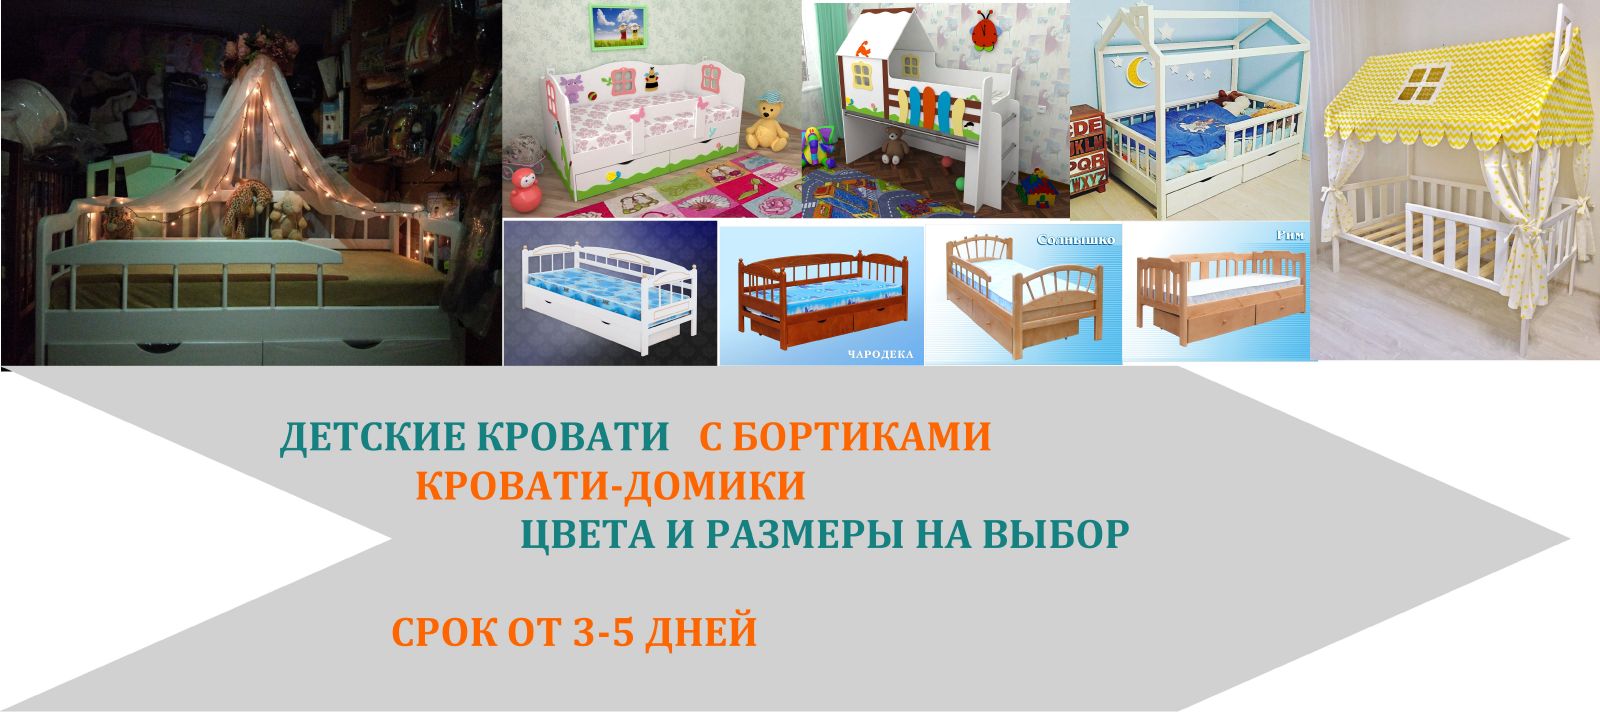 детские кровати с бортиками, кровати-домики цвета и размеры под заказ , срок поставки от 3-5 дней